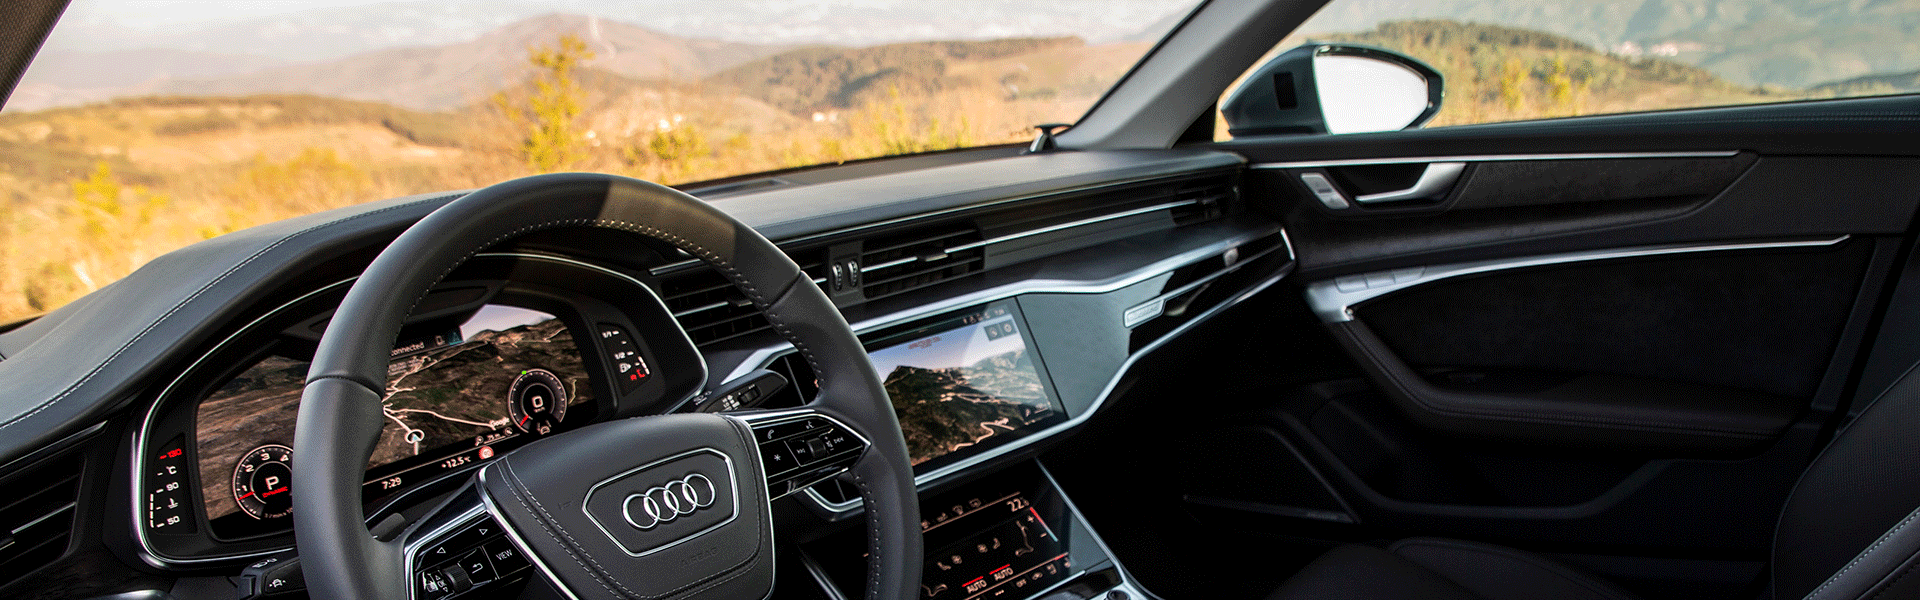 Audi connect Dienste und Funktionen: Naviagtion und Infotainment bringt WLAN in Ihr Auto; Interieur mit MMI